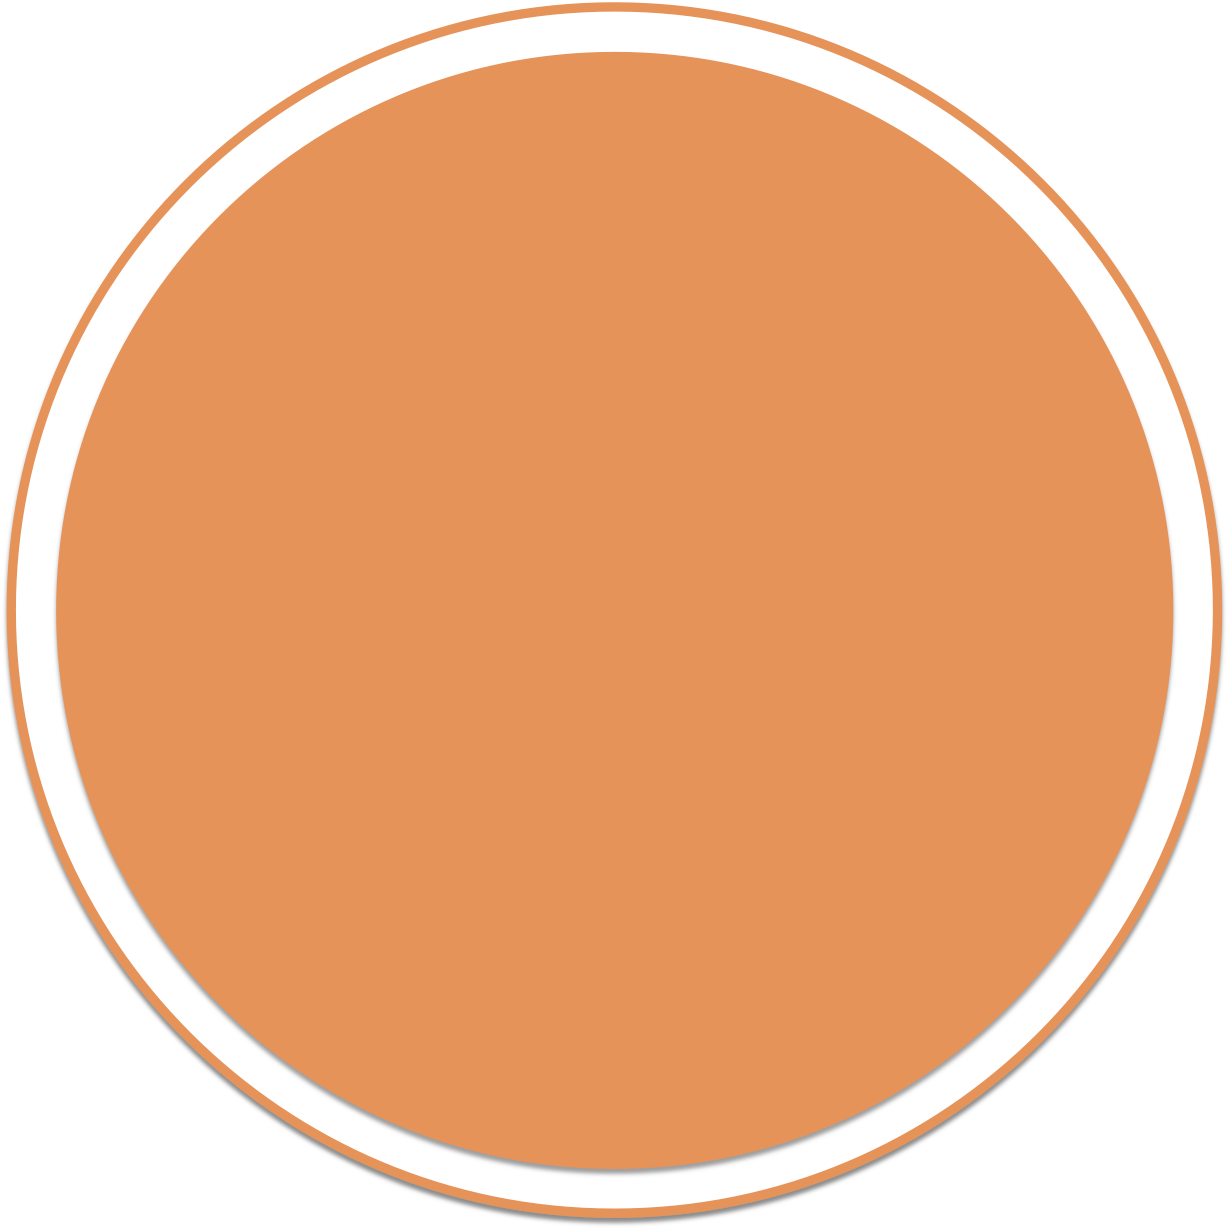 Blank Orange Circle Graphic PNG image